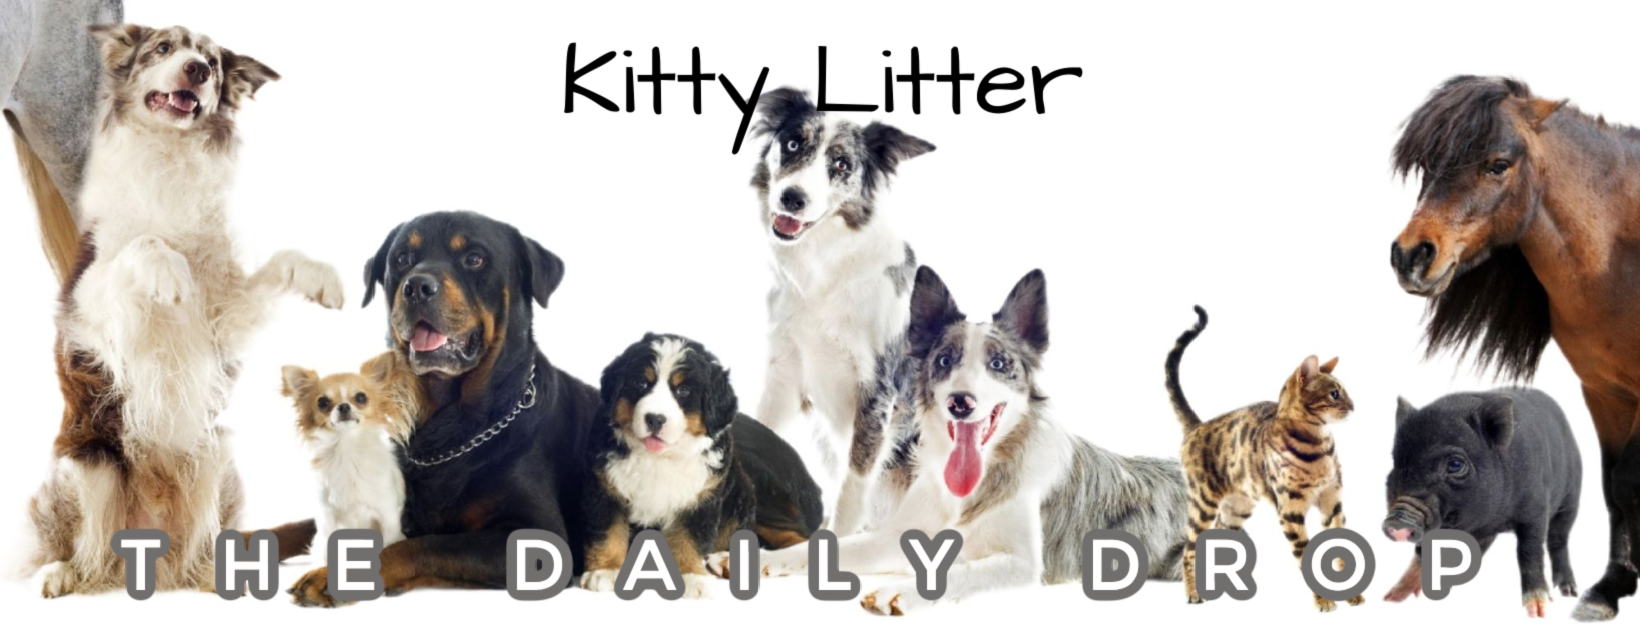 Kitty Litter | From Sandy